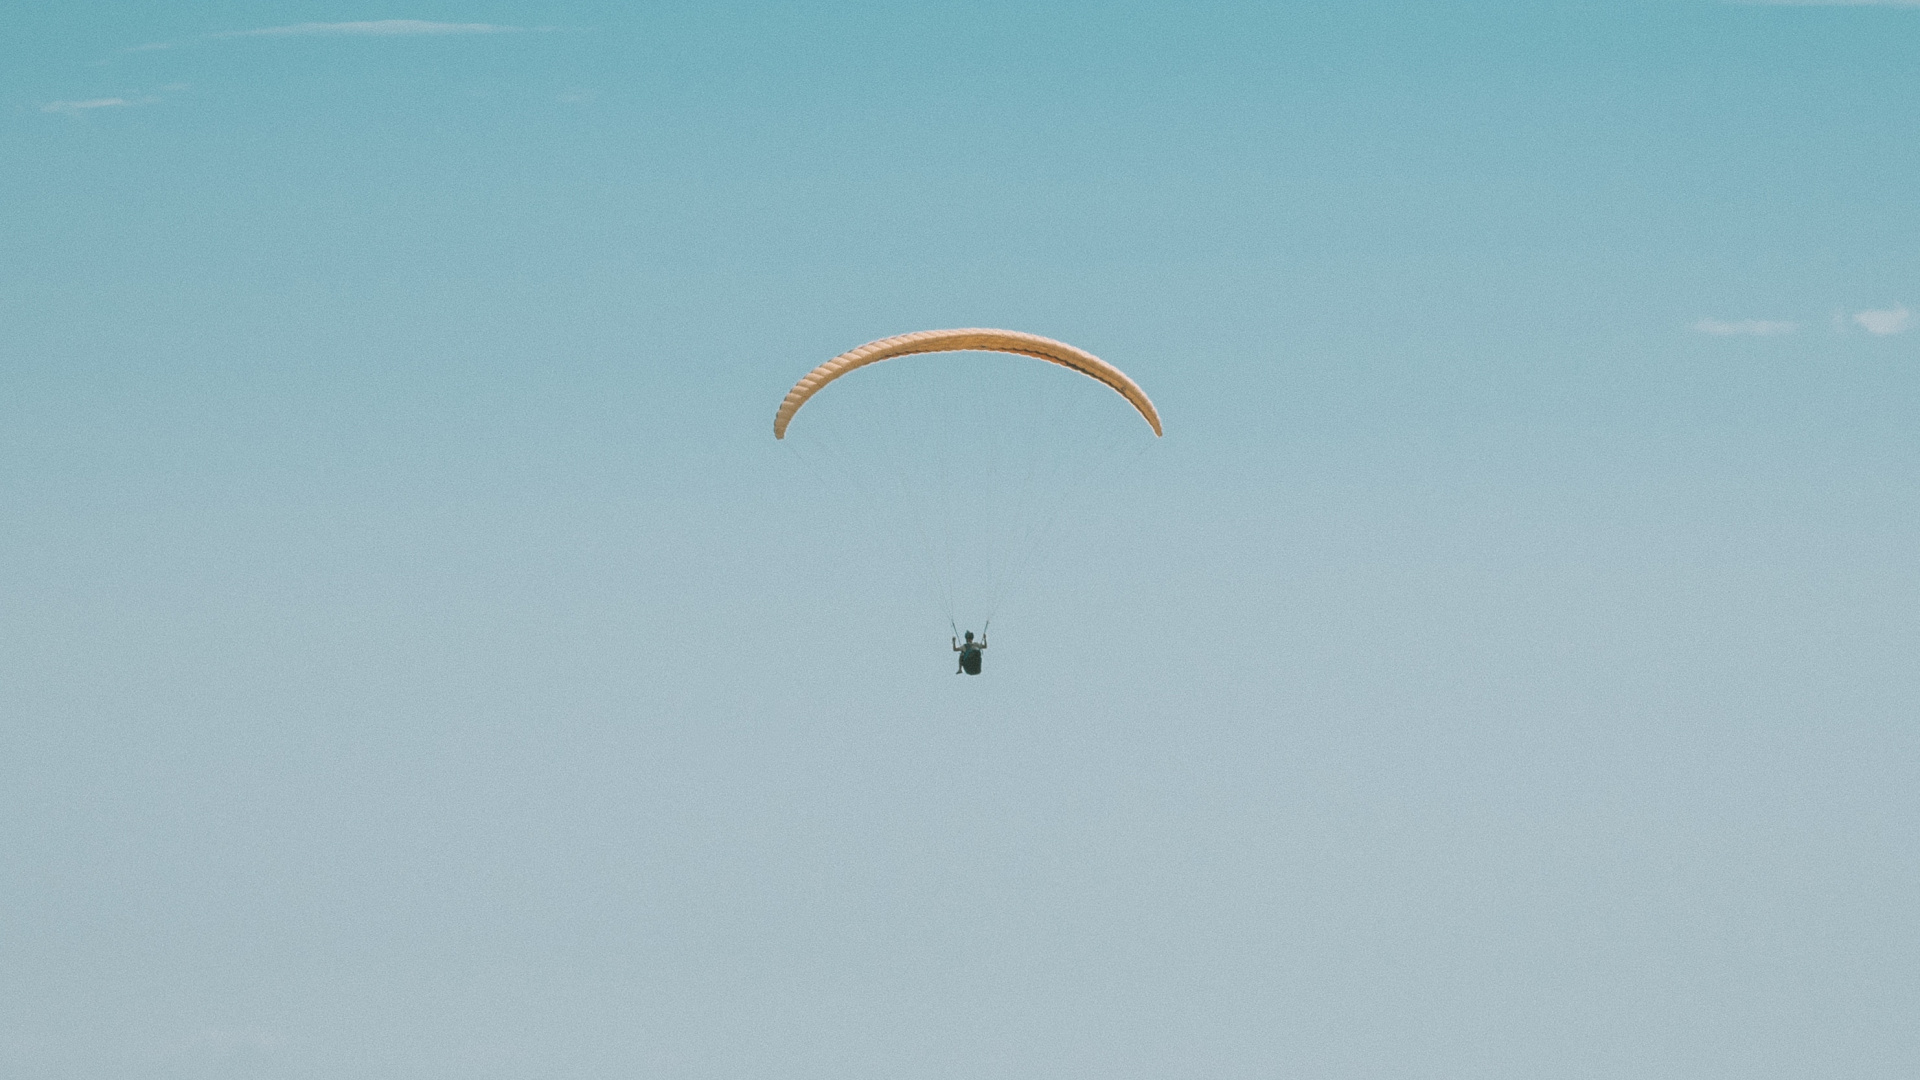 降落伞, 极限运动, 空中运动, Windsports, 伞兵 壁纸 1920x1080 允许